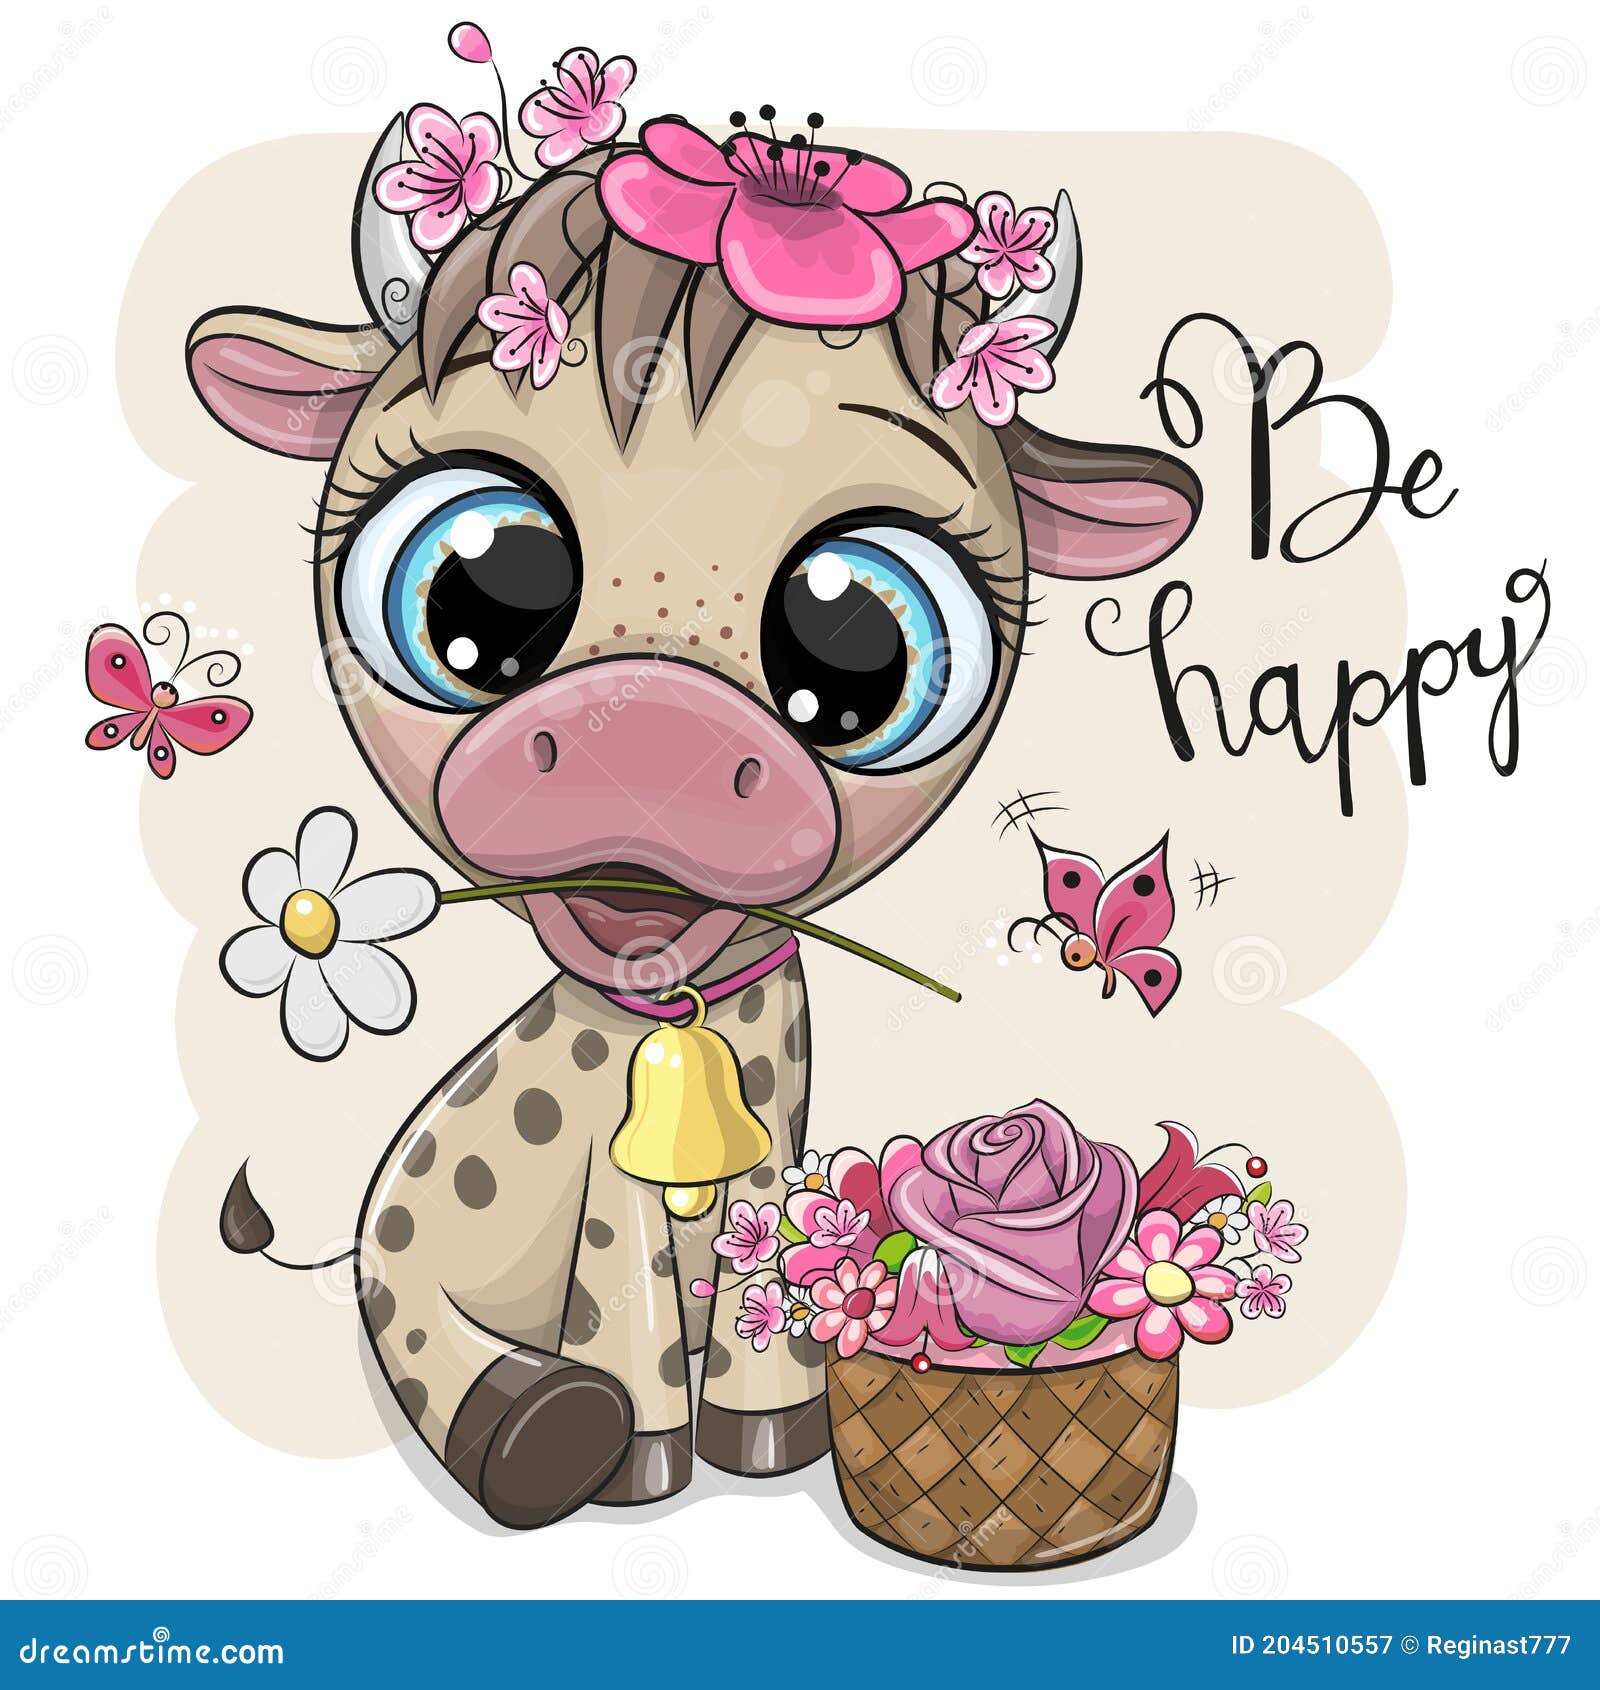 72438 imágenes de Dibujo cabeza de vaca  Imágenes fotos y vectores de  stock  Shutterstock